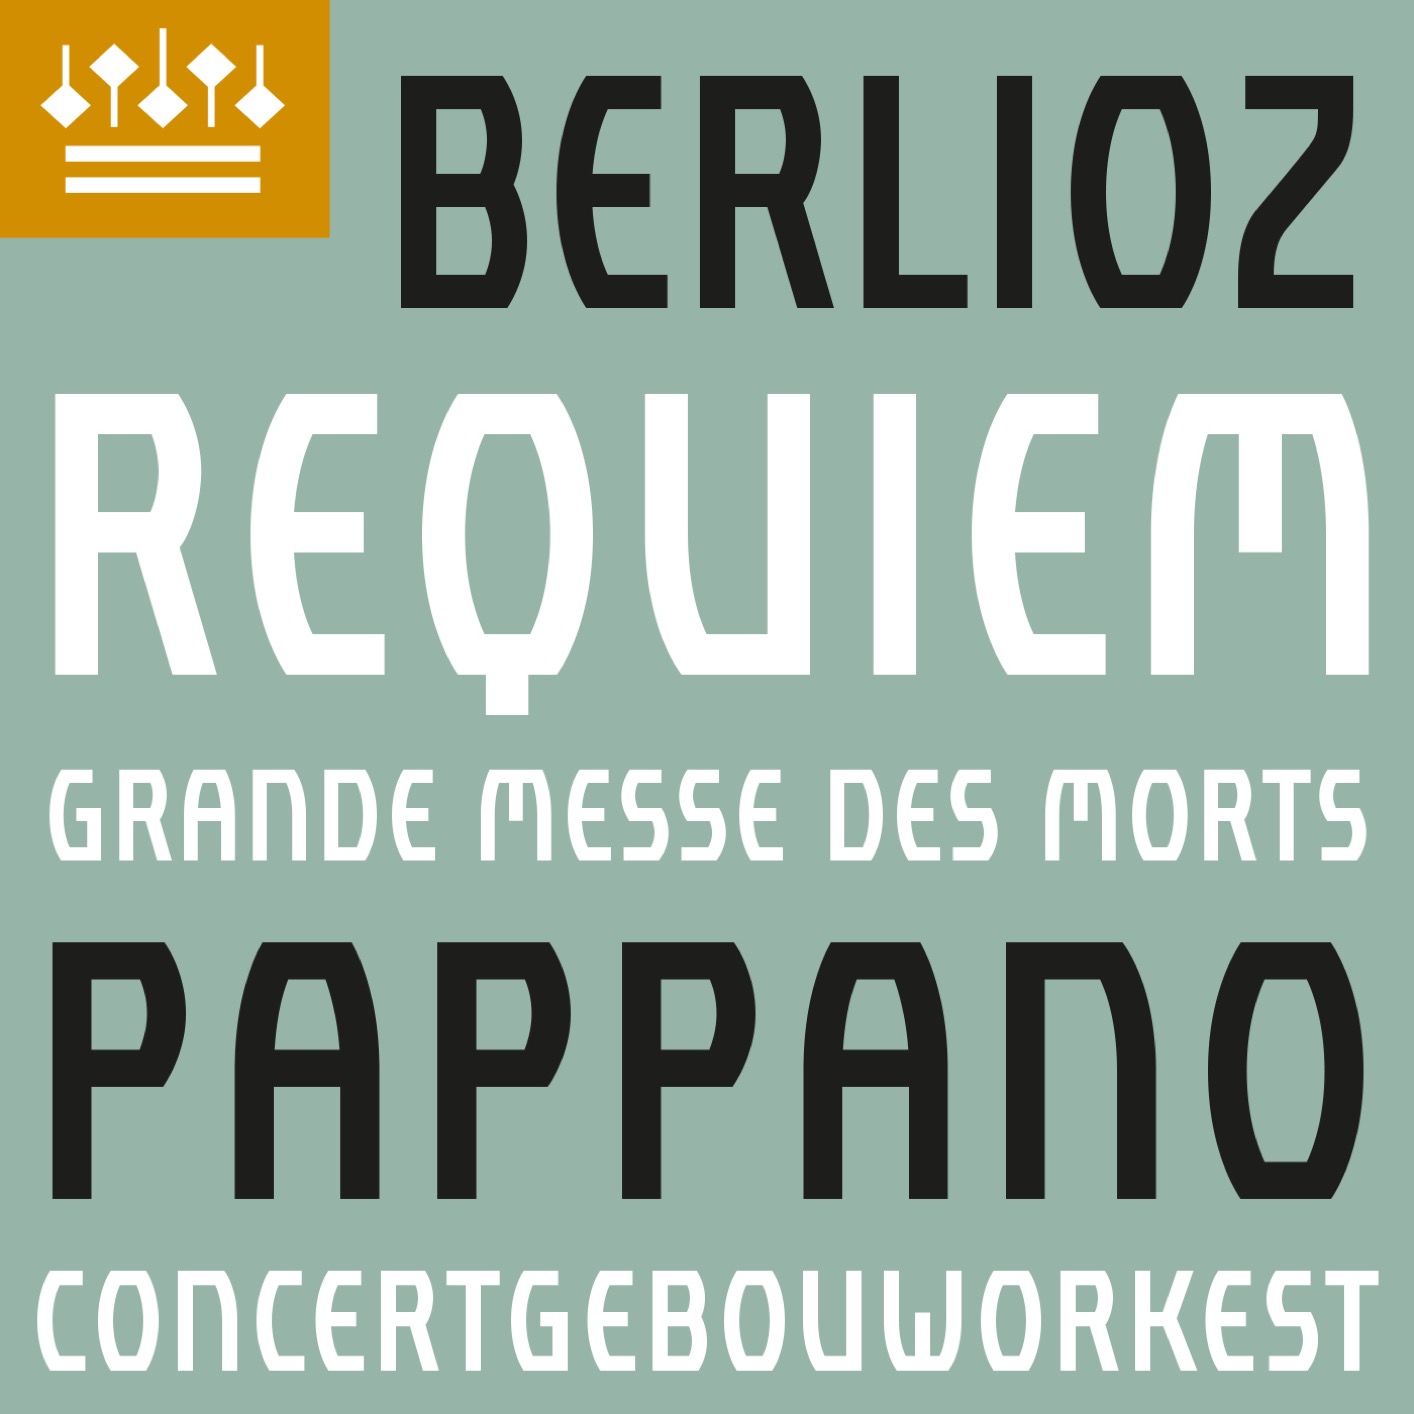 Concertgebouworkest, Antonio Pappano & Javier Camarena – Berlioz: Requiem, Op. 5 (2021) [FLAC 24bit/192kHz]